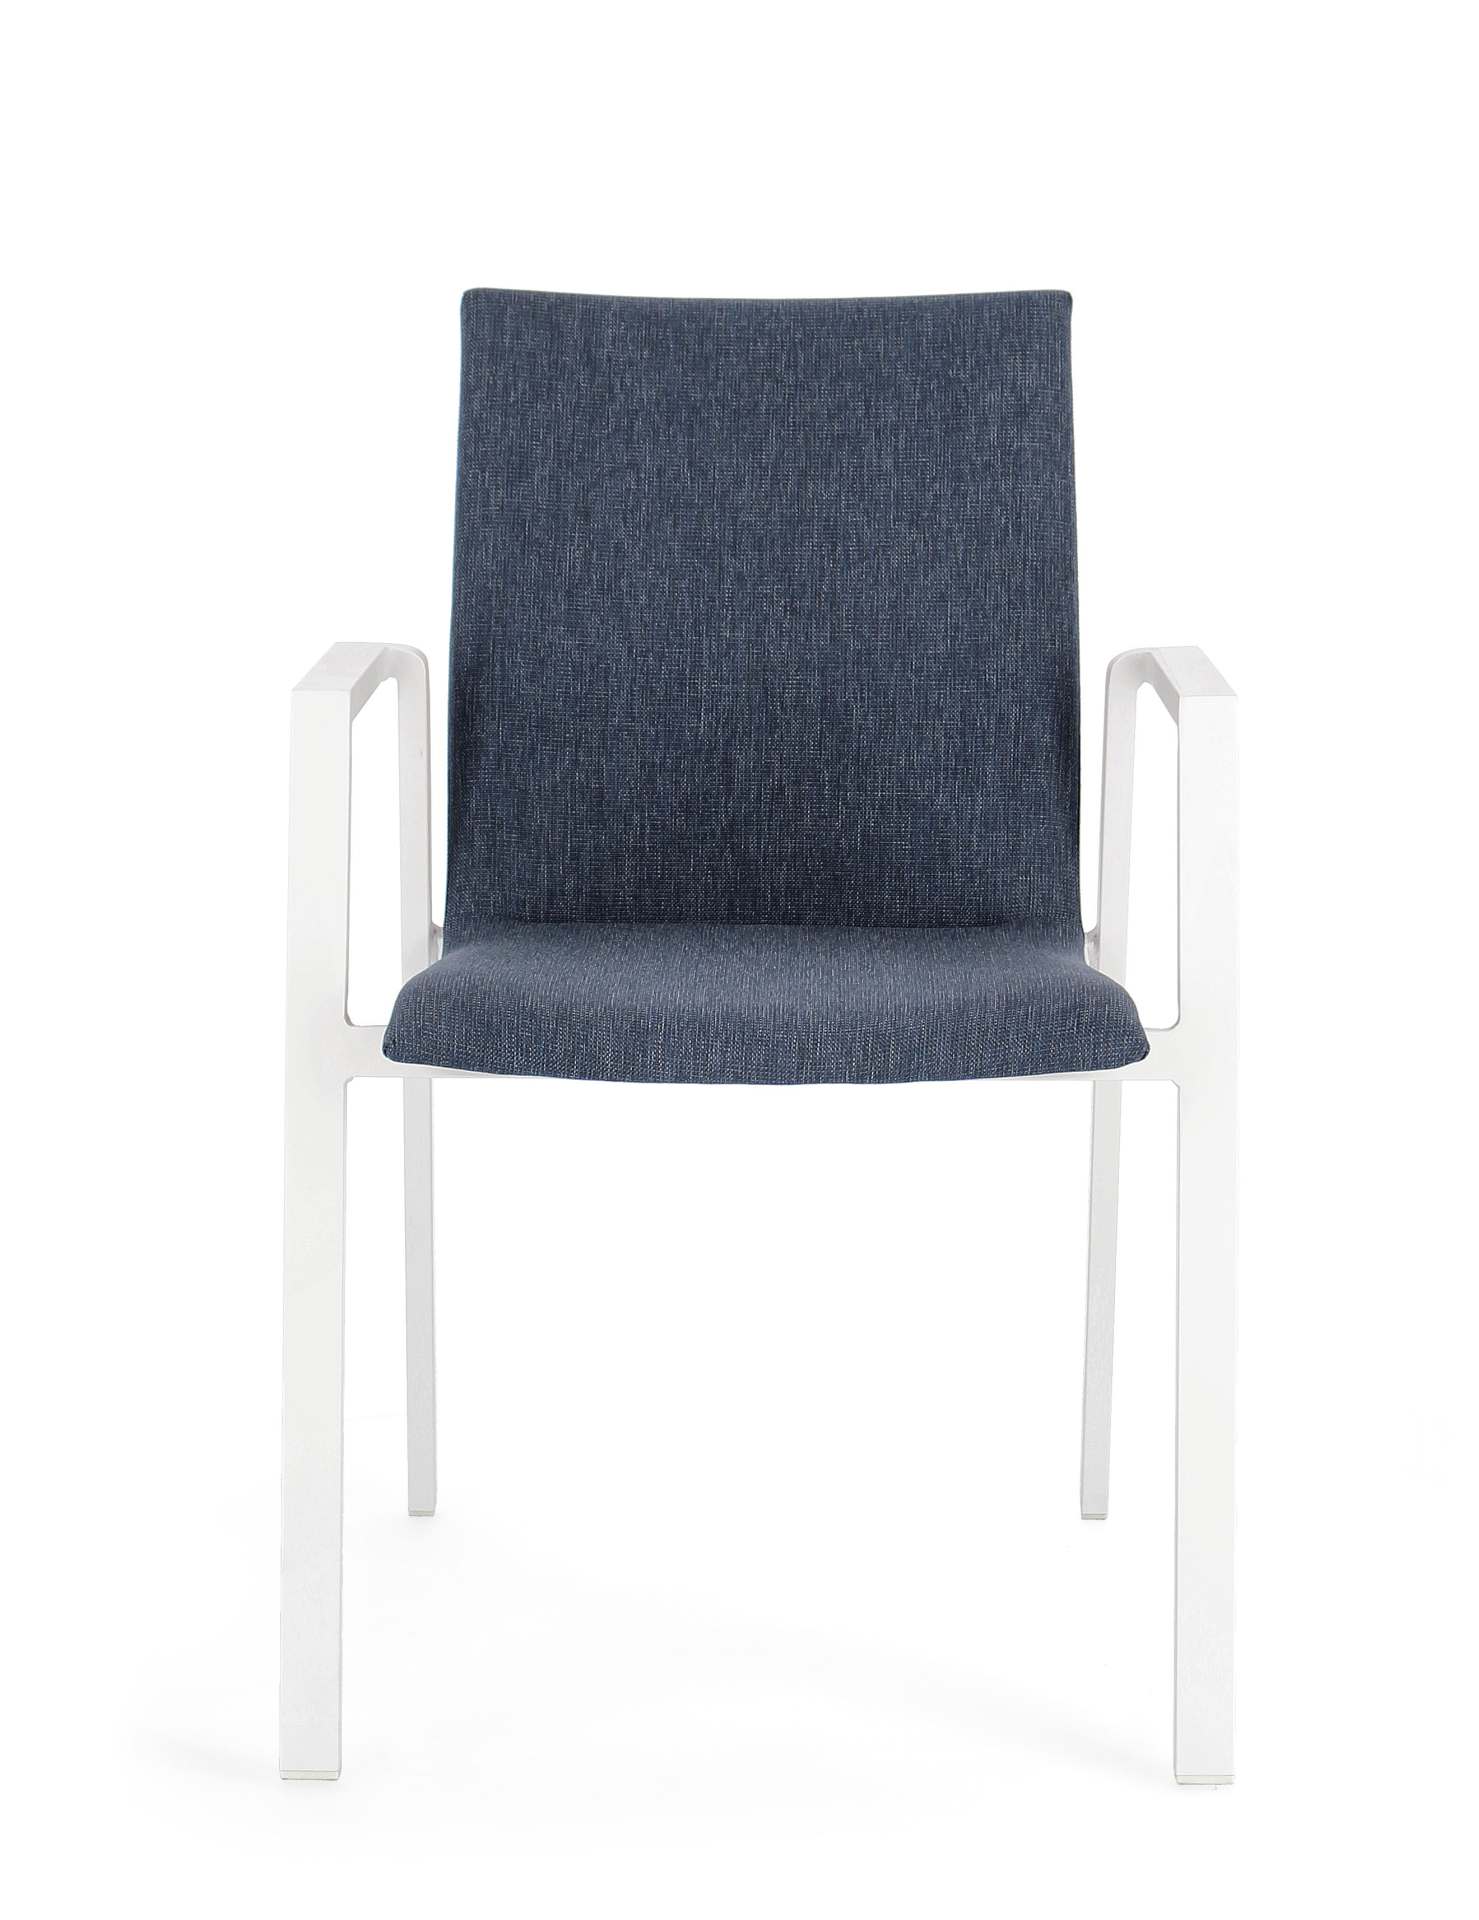 Der Gartenstuhl Odeon überzeugt mit seinem modernen Design. Gefertigt wurde er aus einem Mischstoff, welcher einen blauen Farbton besitzt. Das Gestell ist aus Aluminium und hat auch eine weiße Farbe. Der Stuhl verfügt über eine Sitzhöhe von 47 cm und ist 